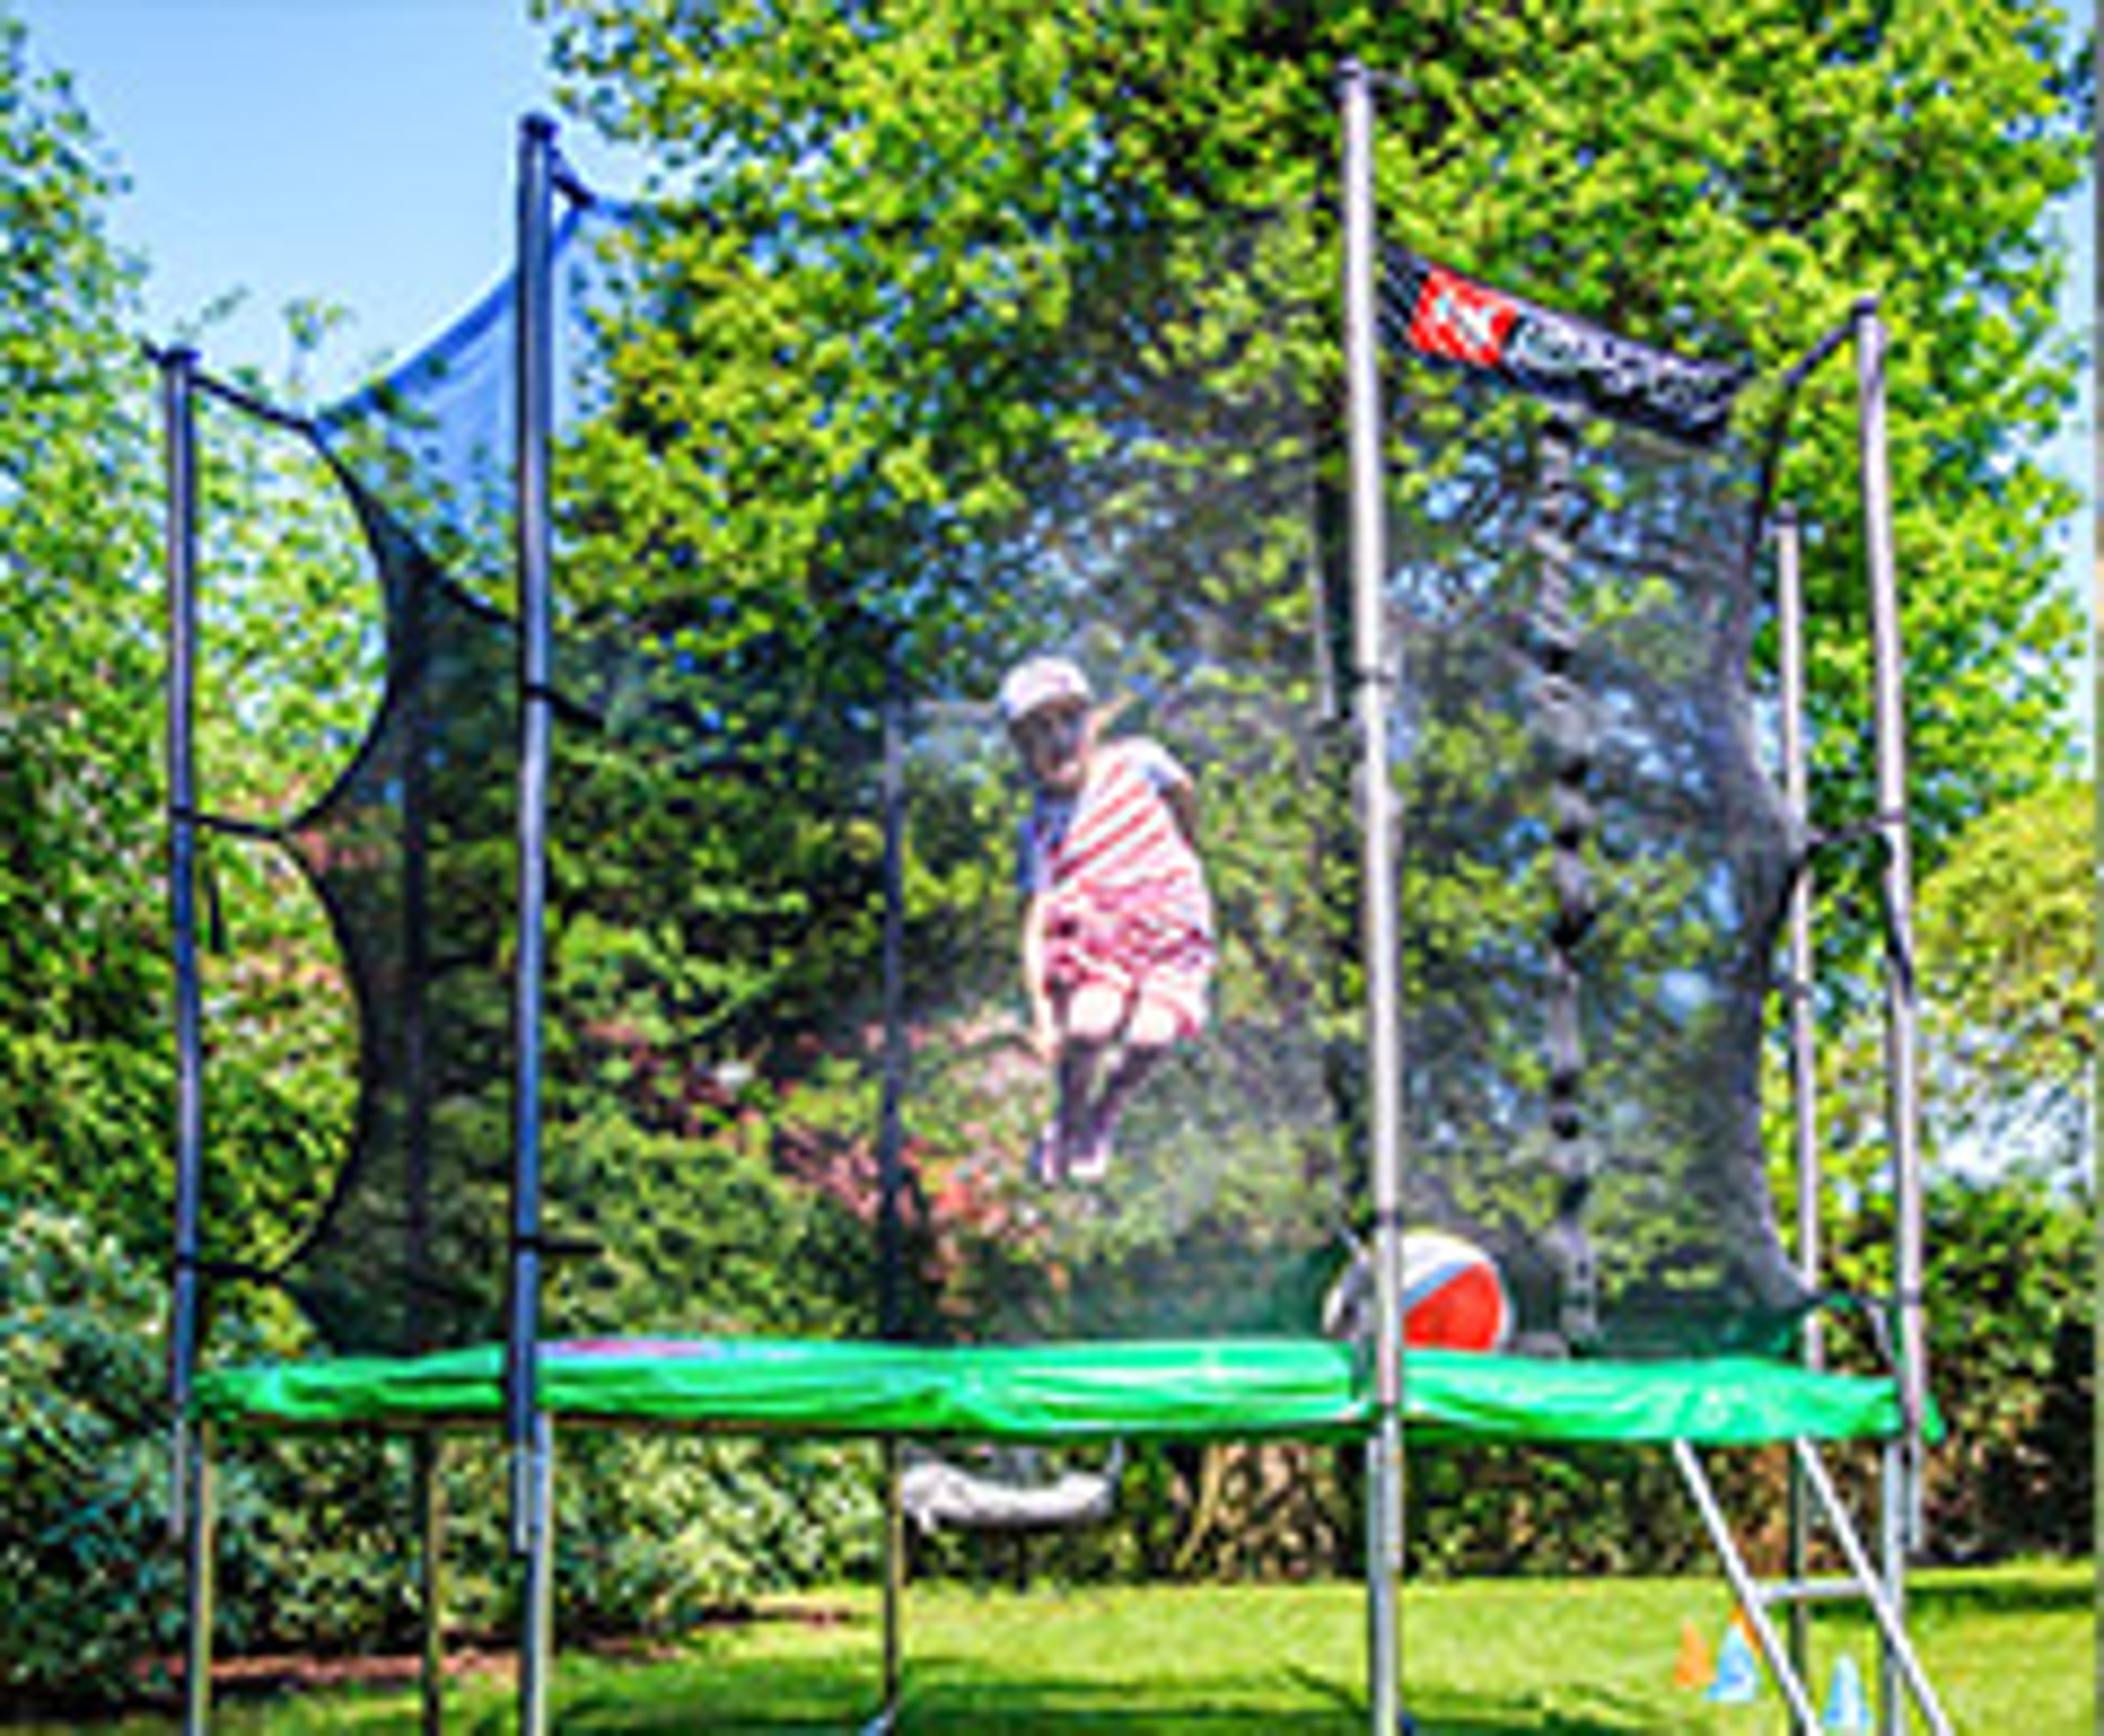 dziecko skaczące na trampolinie w ogródku